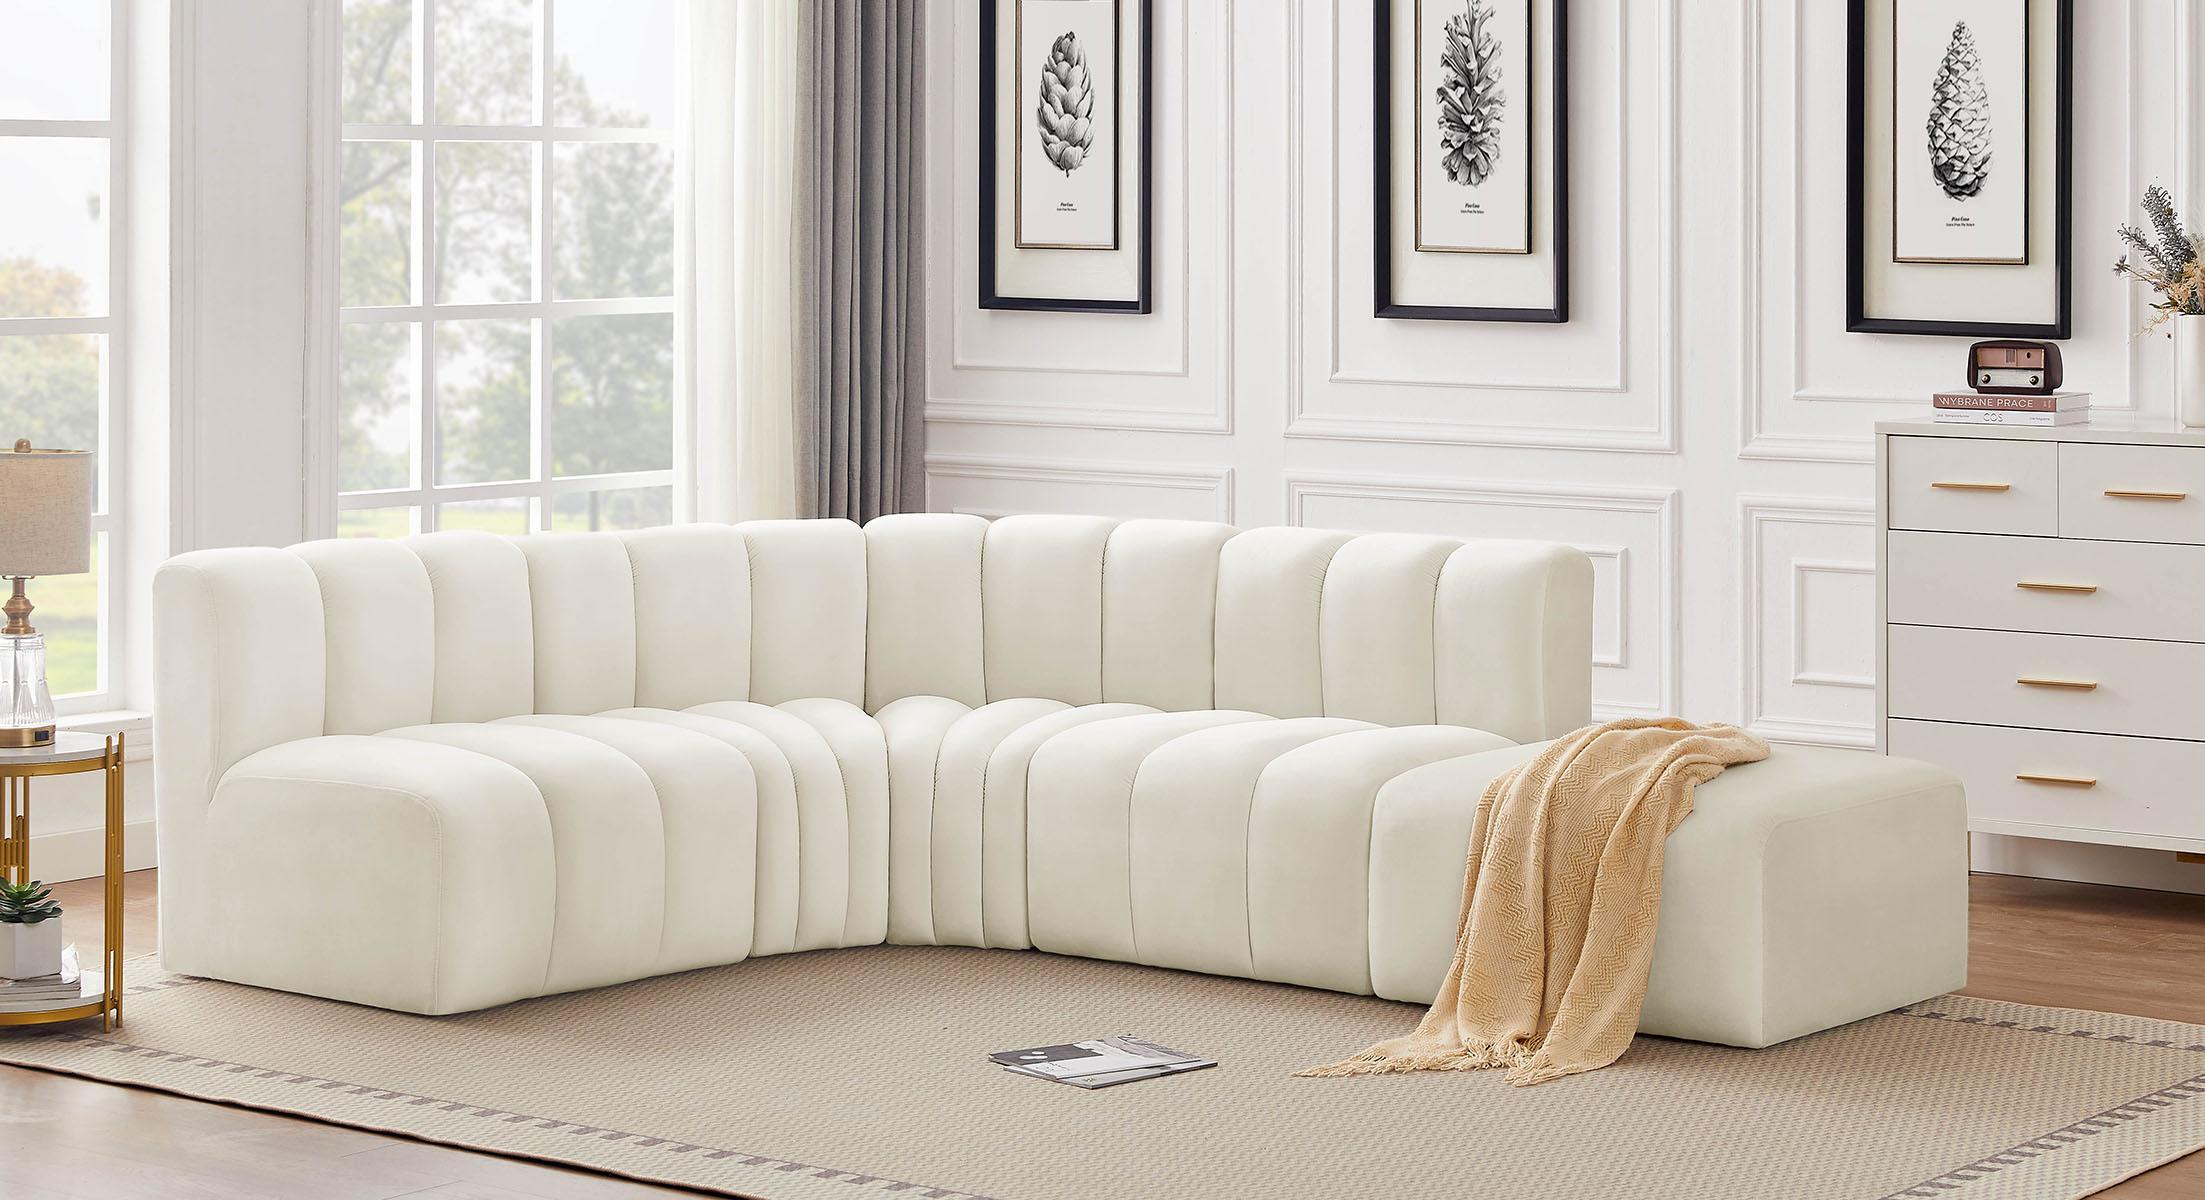 

    
Meridian Furniture ARC 103Cream-S5C Modular Sectional Sofa Cream 103Cream-S5C
